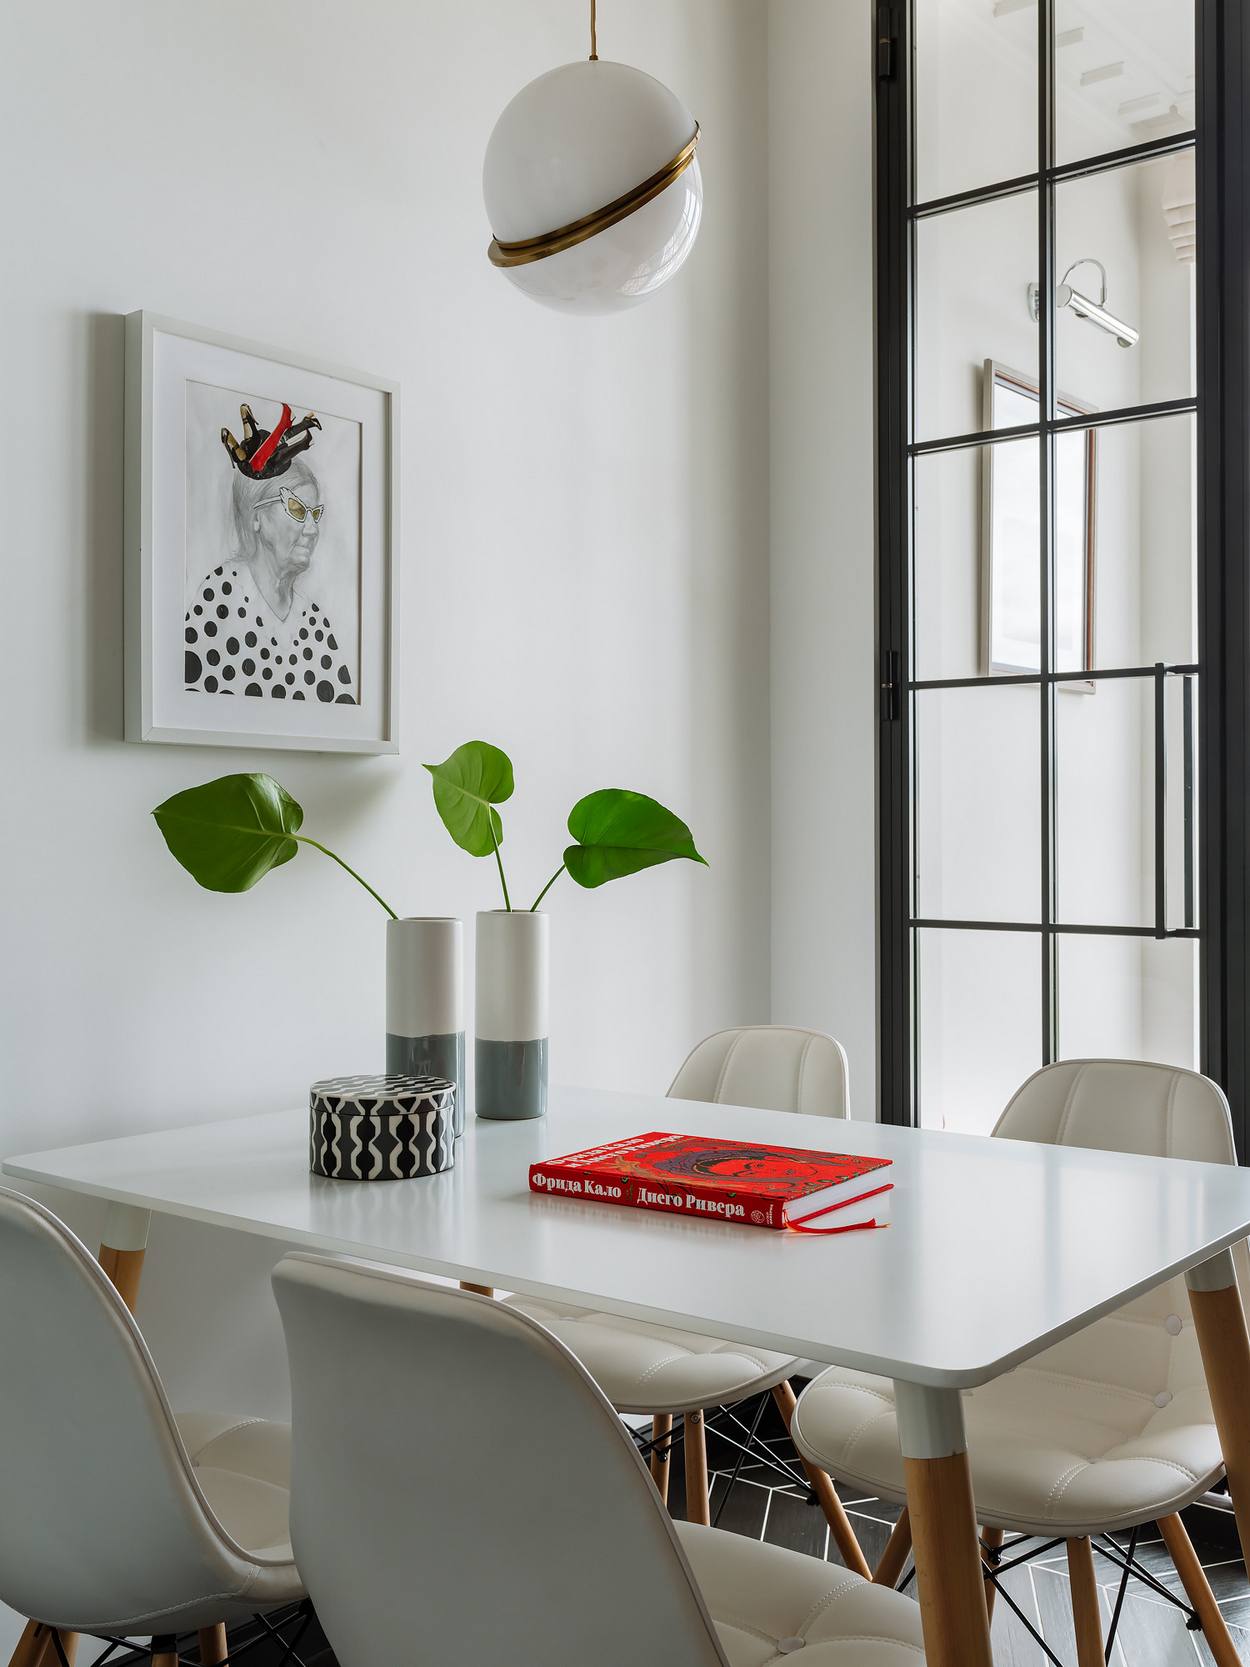 Bộ bàn ghế ở khu vực ăn uống được thiết kế tối giản với bàn trắng hình chữ nhật chân gỗ, 4 chiếc ghế màu trắng đồng bộ đối xứng nhau. Bức tranh cụ già trang trí trên bức tường cũng tạo nên một sức hút khó diễn đạt thành lời.